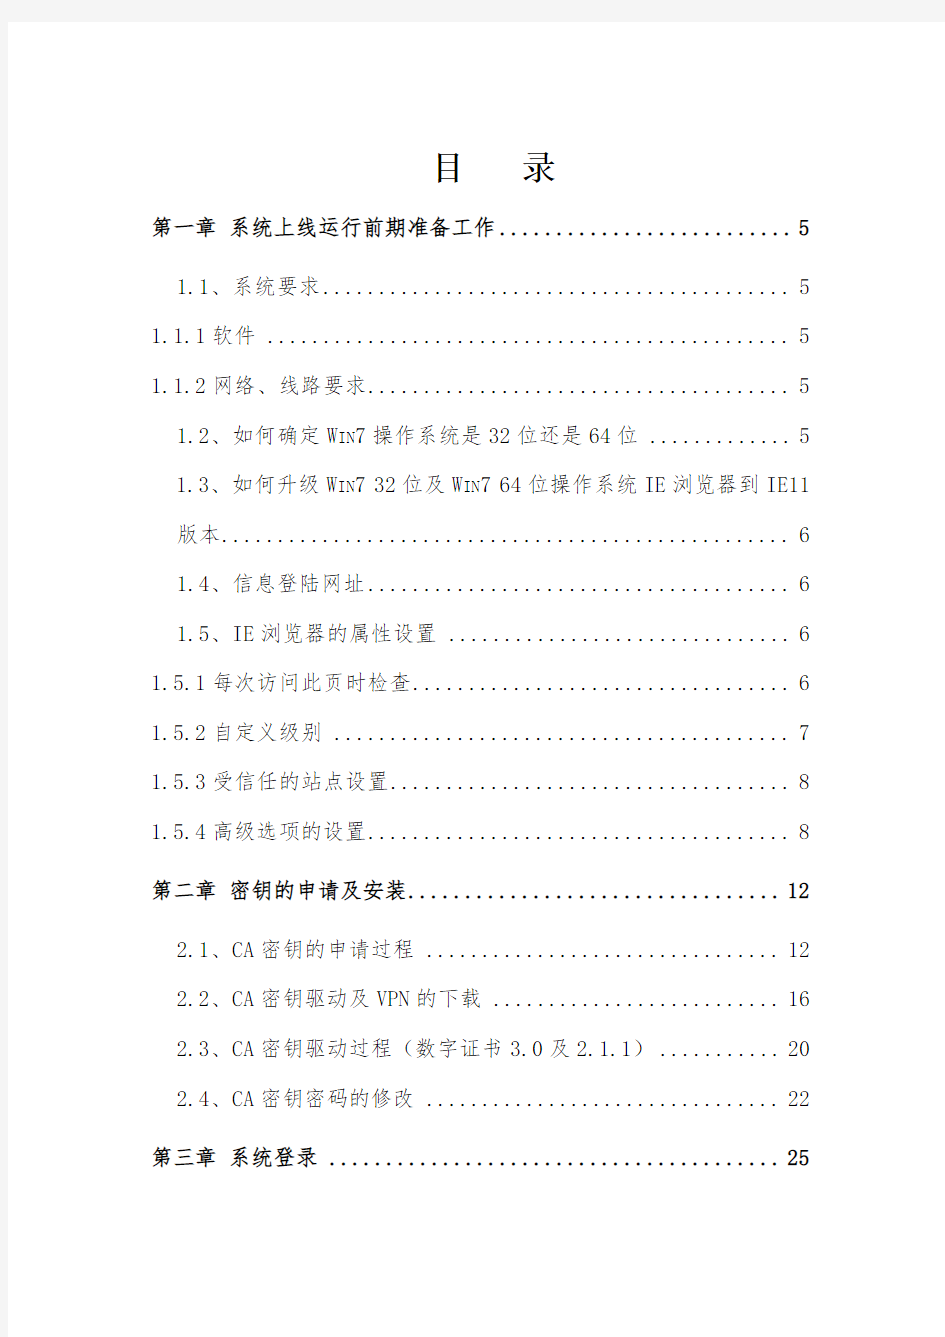 黑龙江省机关事业单位工资管理信息系统操作手册(20170320)